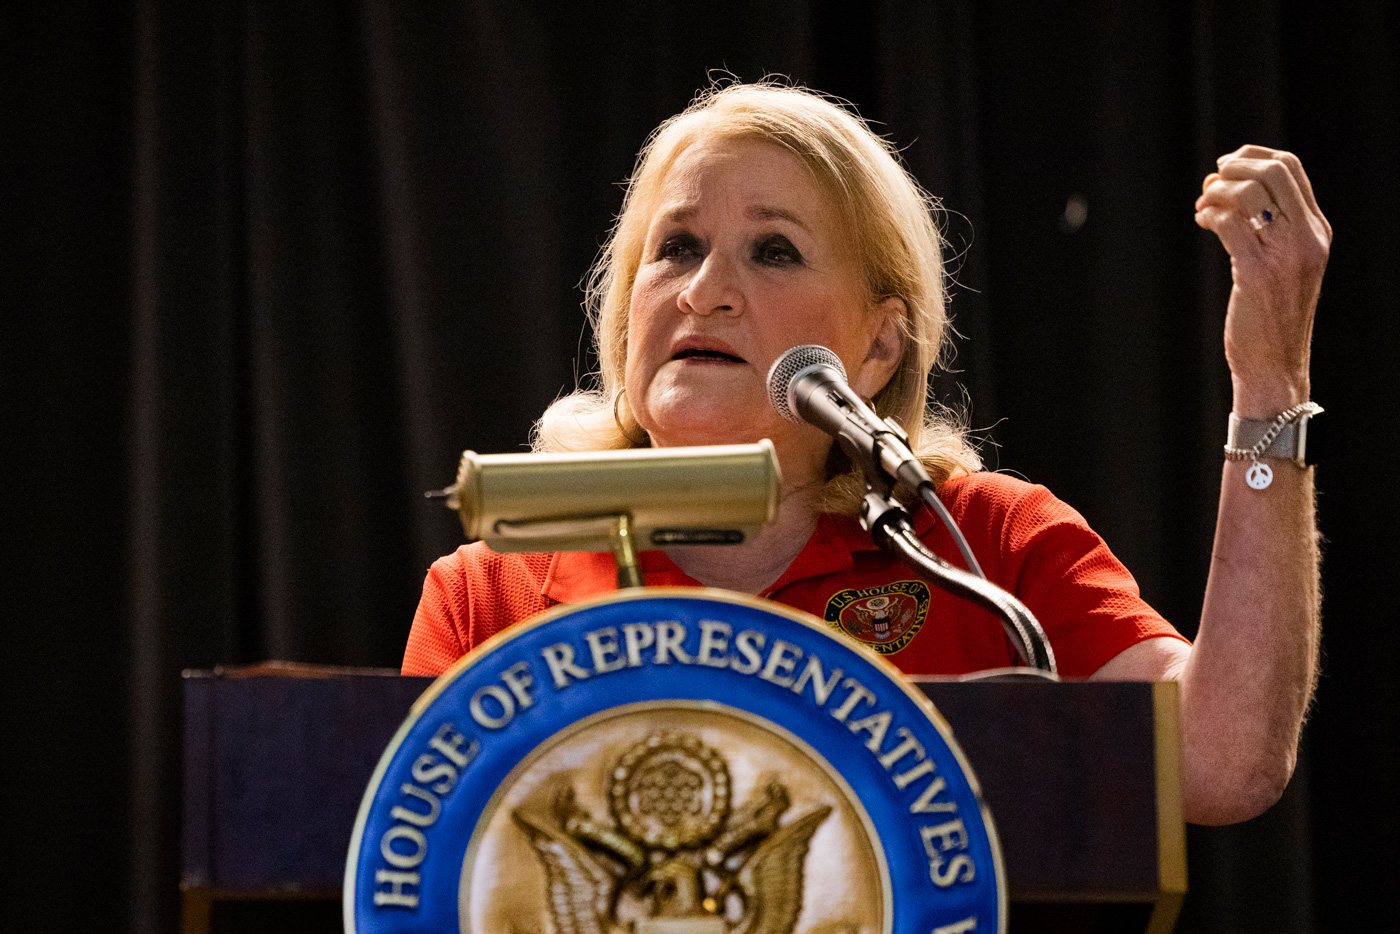 Congresswoman gives a speech behind a podium